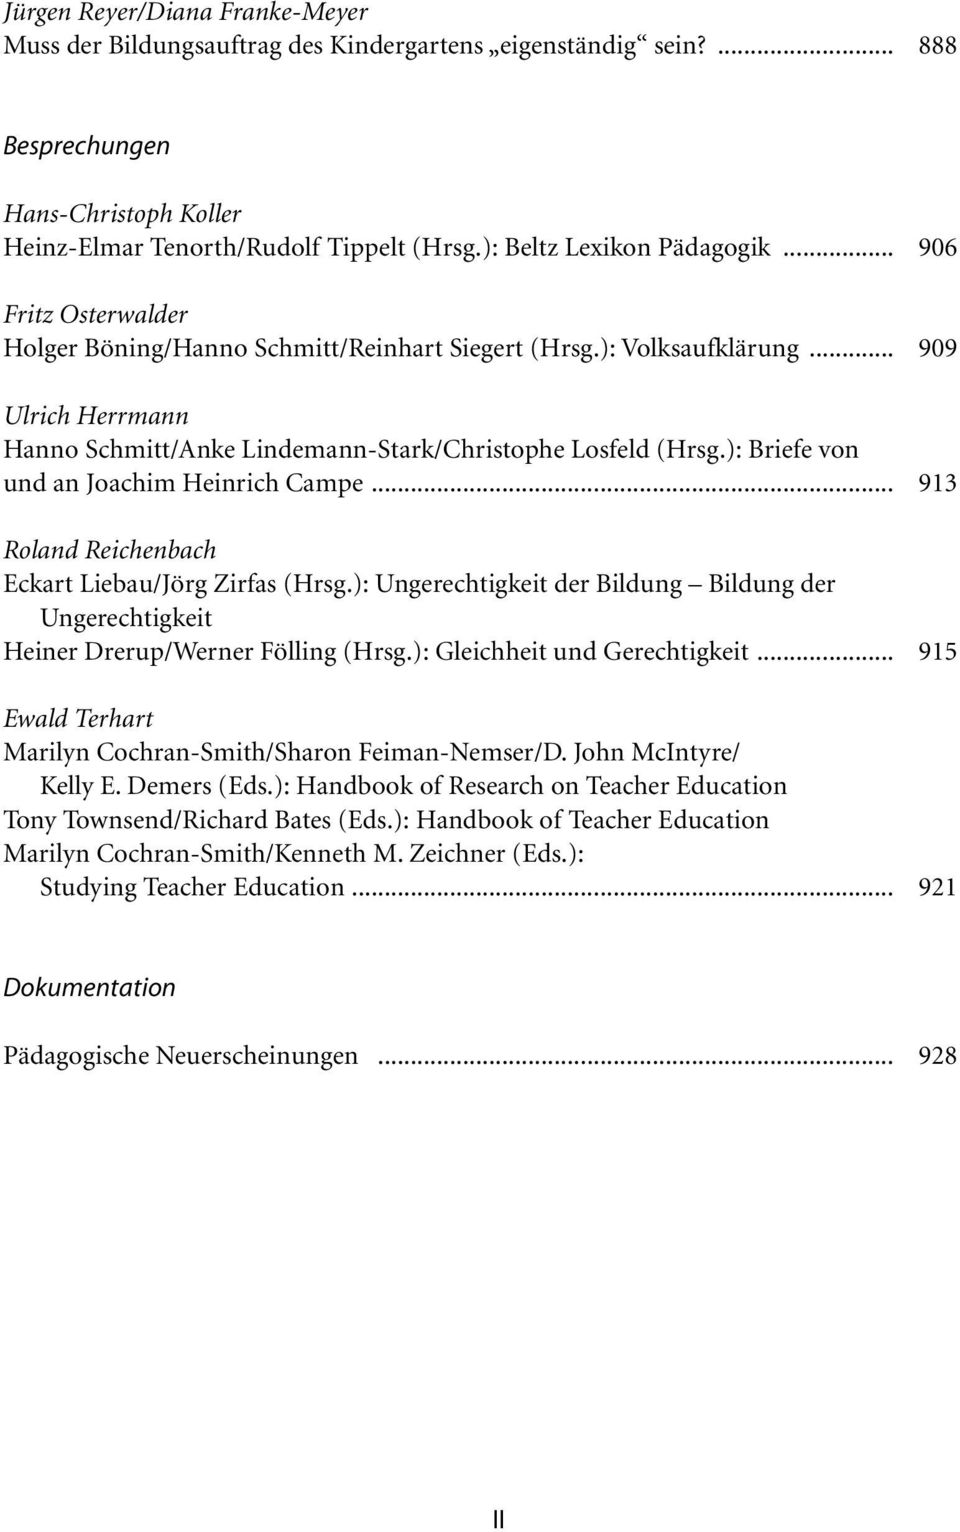 .. 909 Ulrich Herrmann Hanno Schmitt/Anke Lindemann-Stark/Christophe Losfeld (Hrsg.): Briefe von und an Joachim Heinrich Campe... 913 Roland Reichenbach Eckart Liebau/Jörg Zirfas (Hrsg.